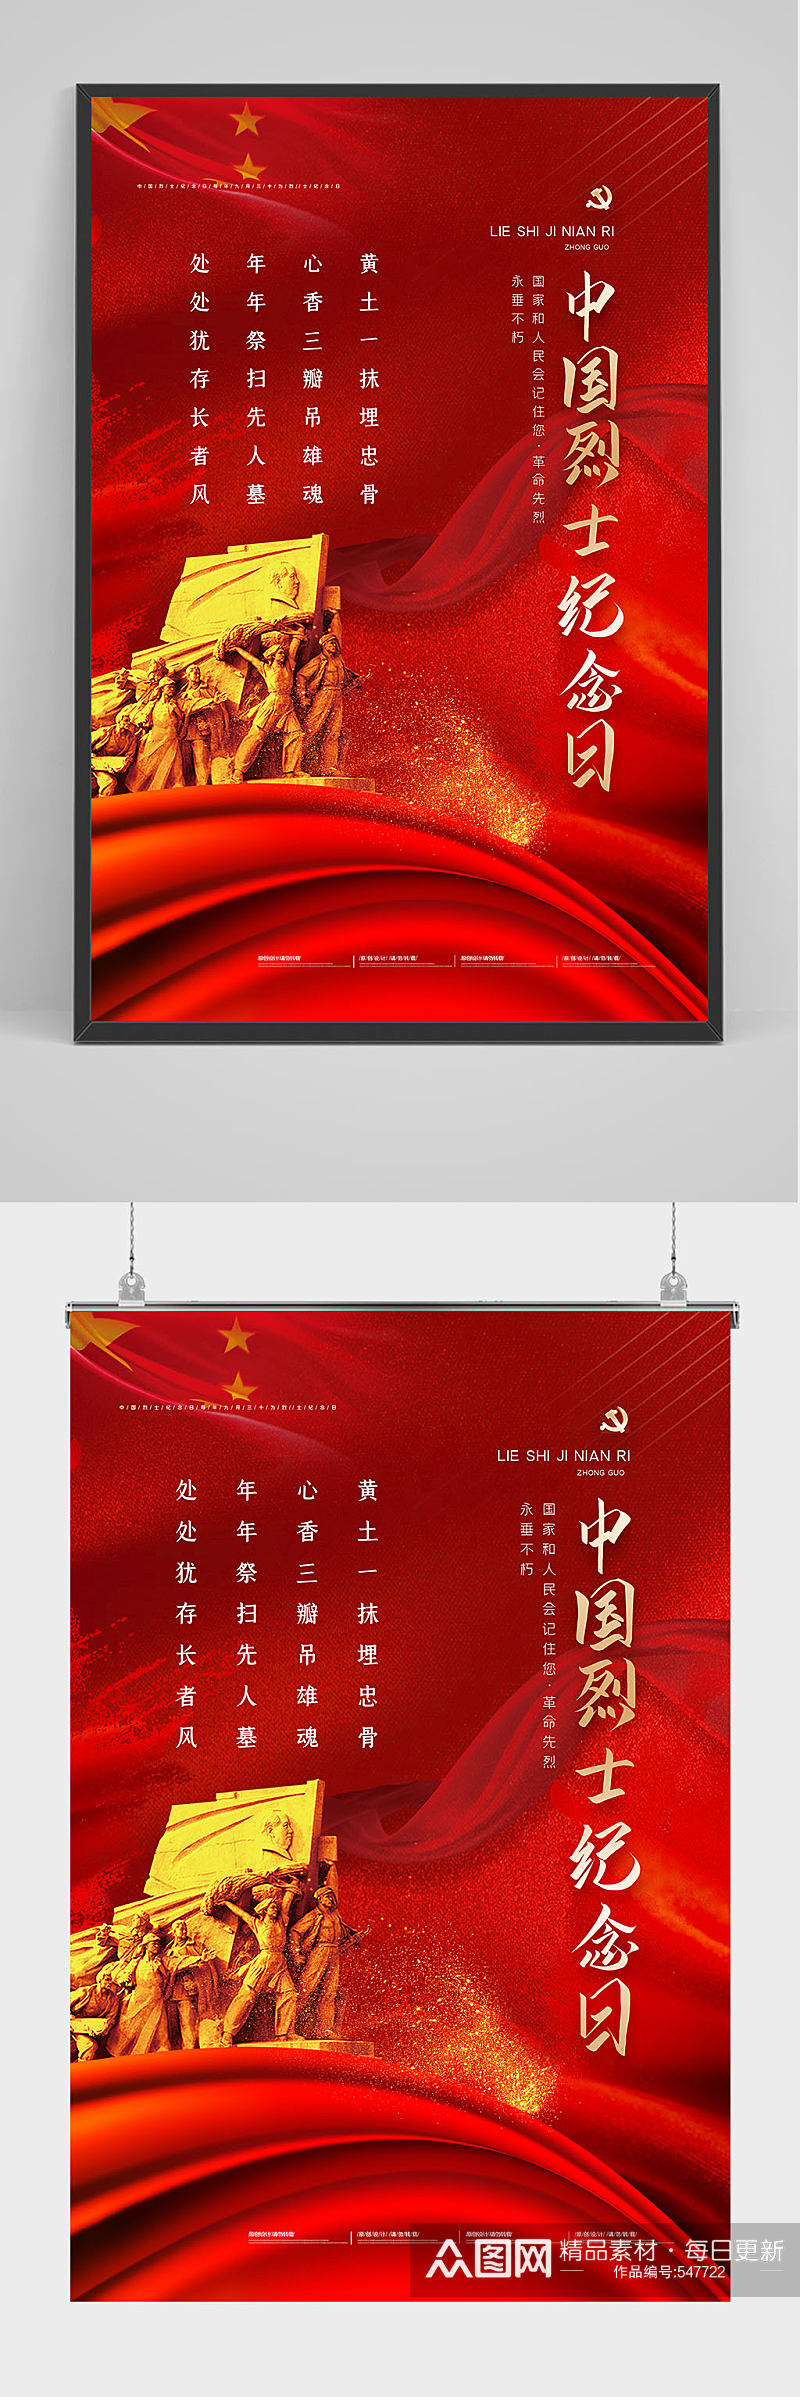 红色党建中国烈士纪念日海报设计素材